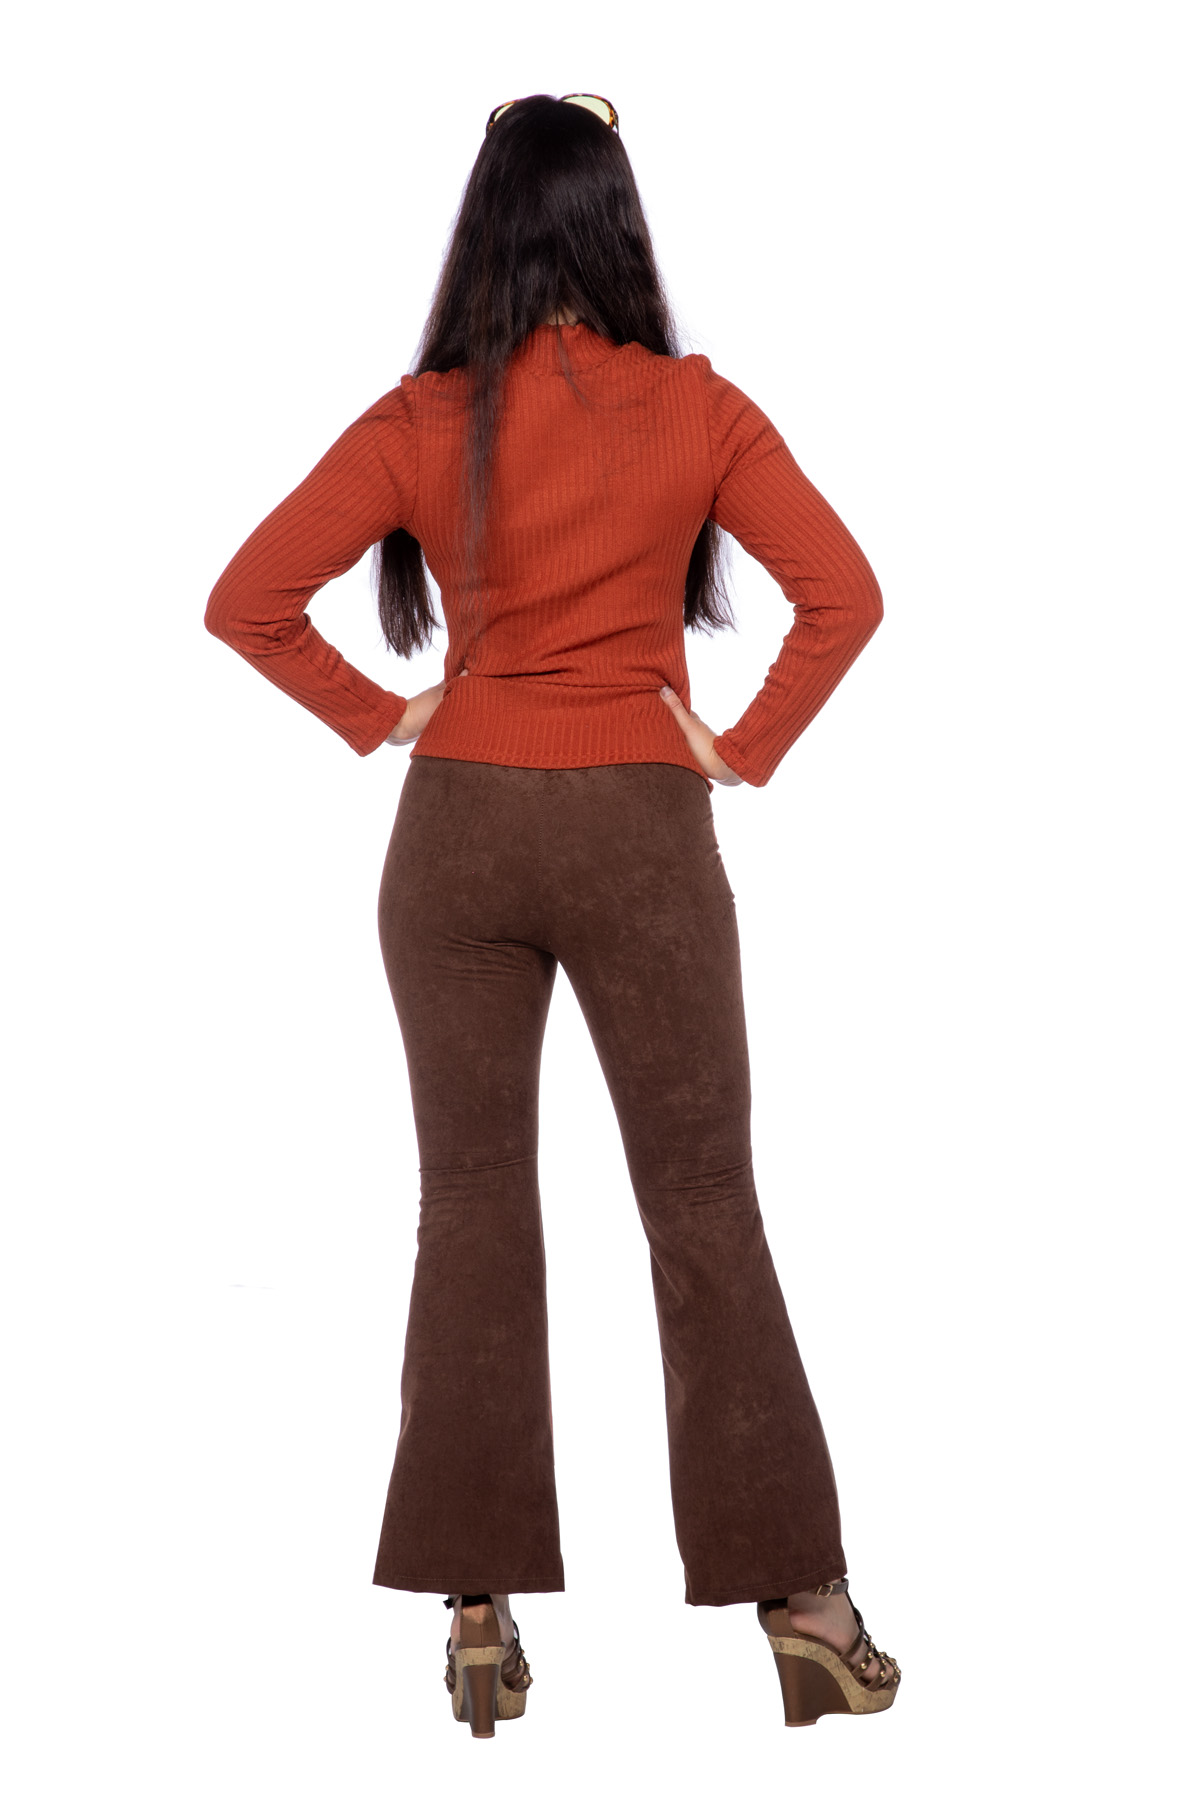 Retro 70's set Velma